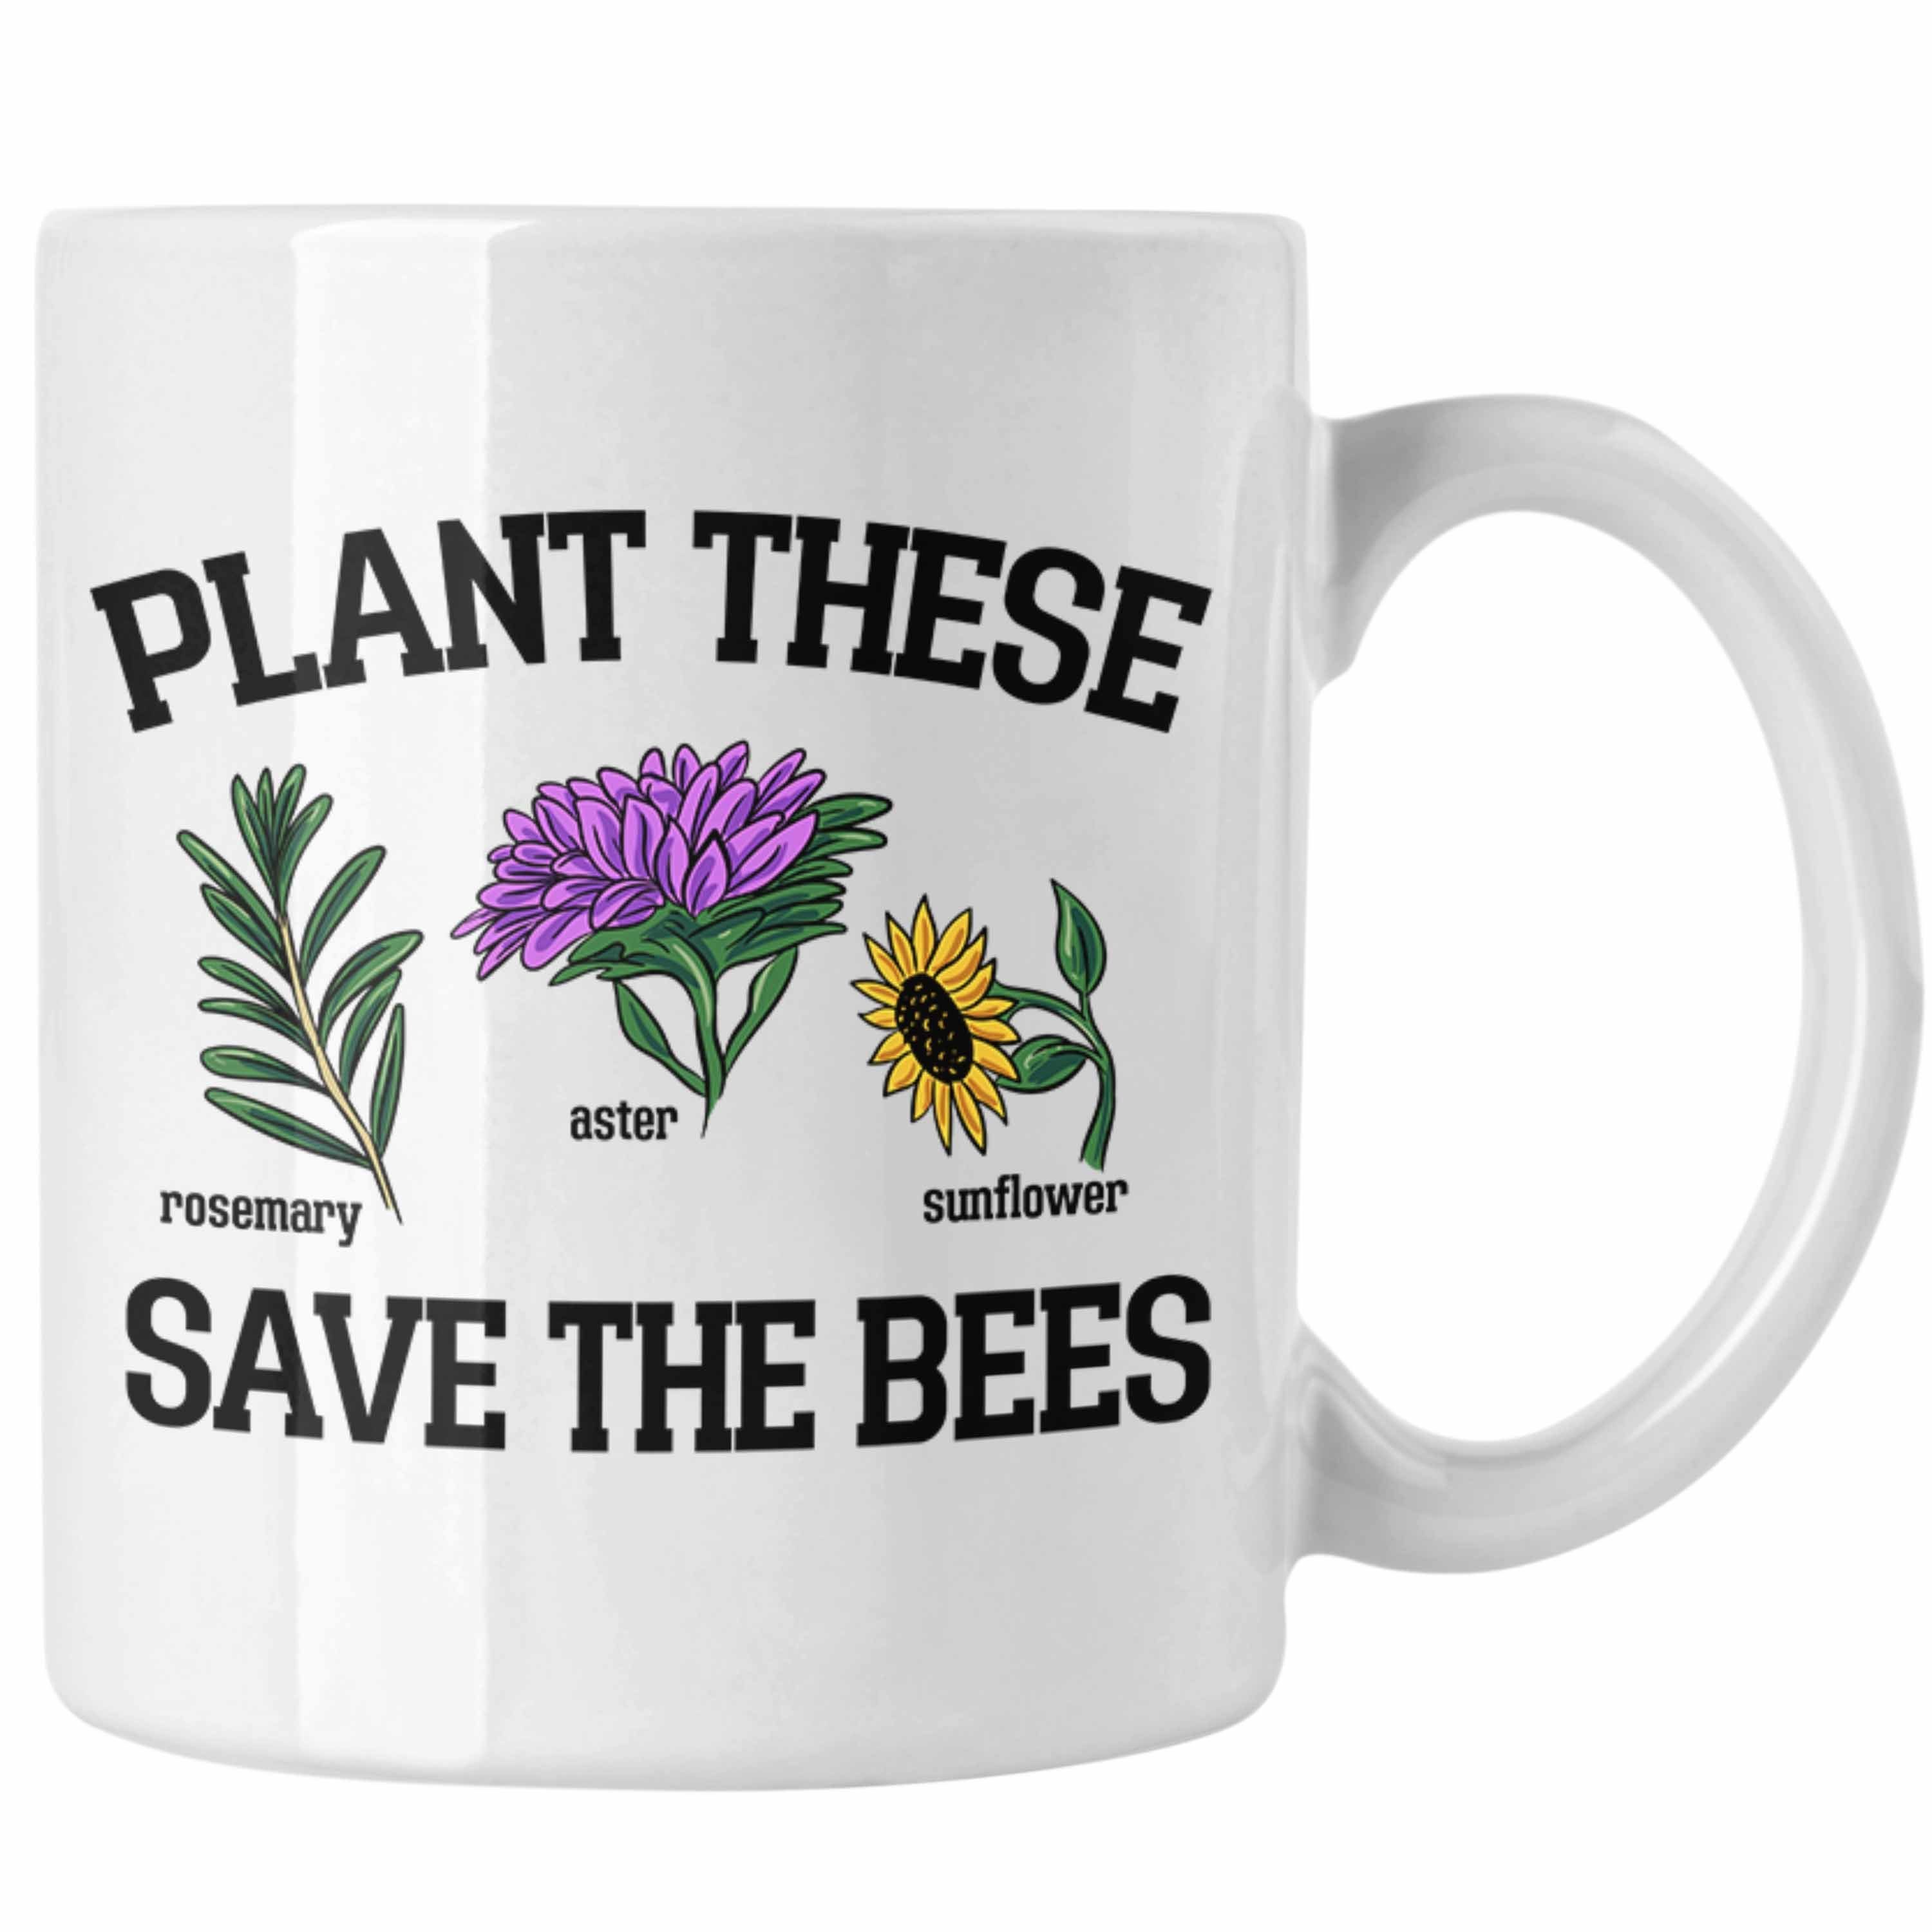 Trendation Tasse Lustige Tasse für Bienenliebhaber Plant These Save The Bees Geschenk Weiss